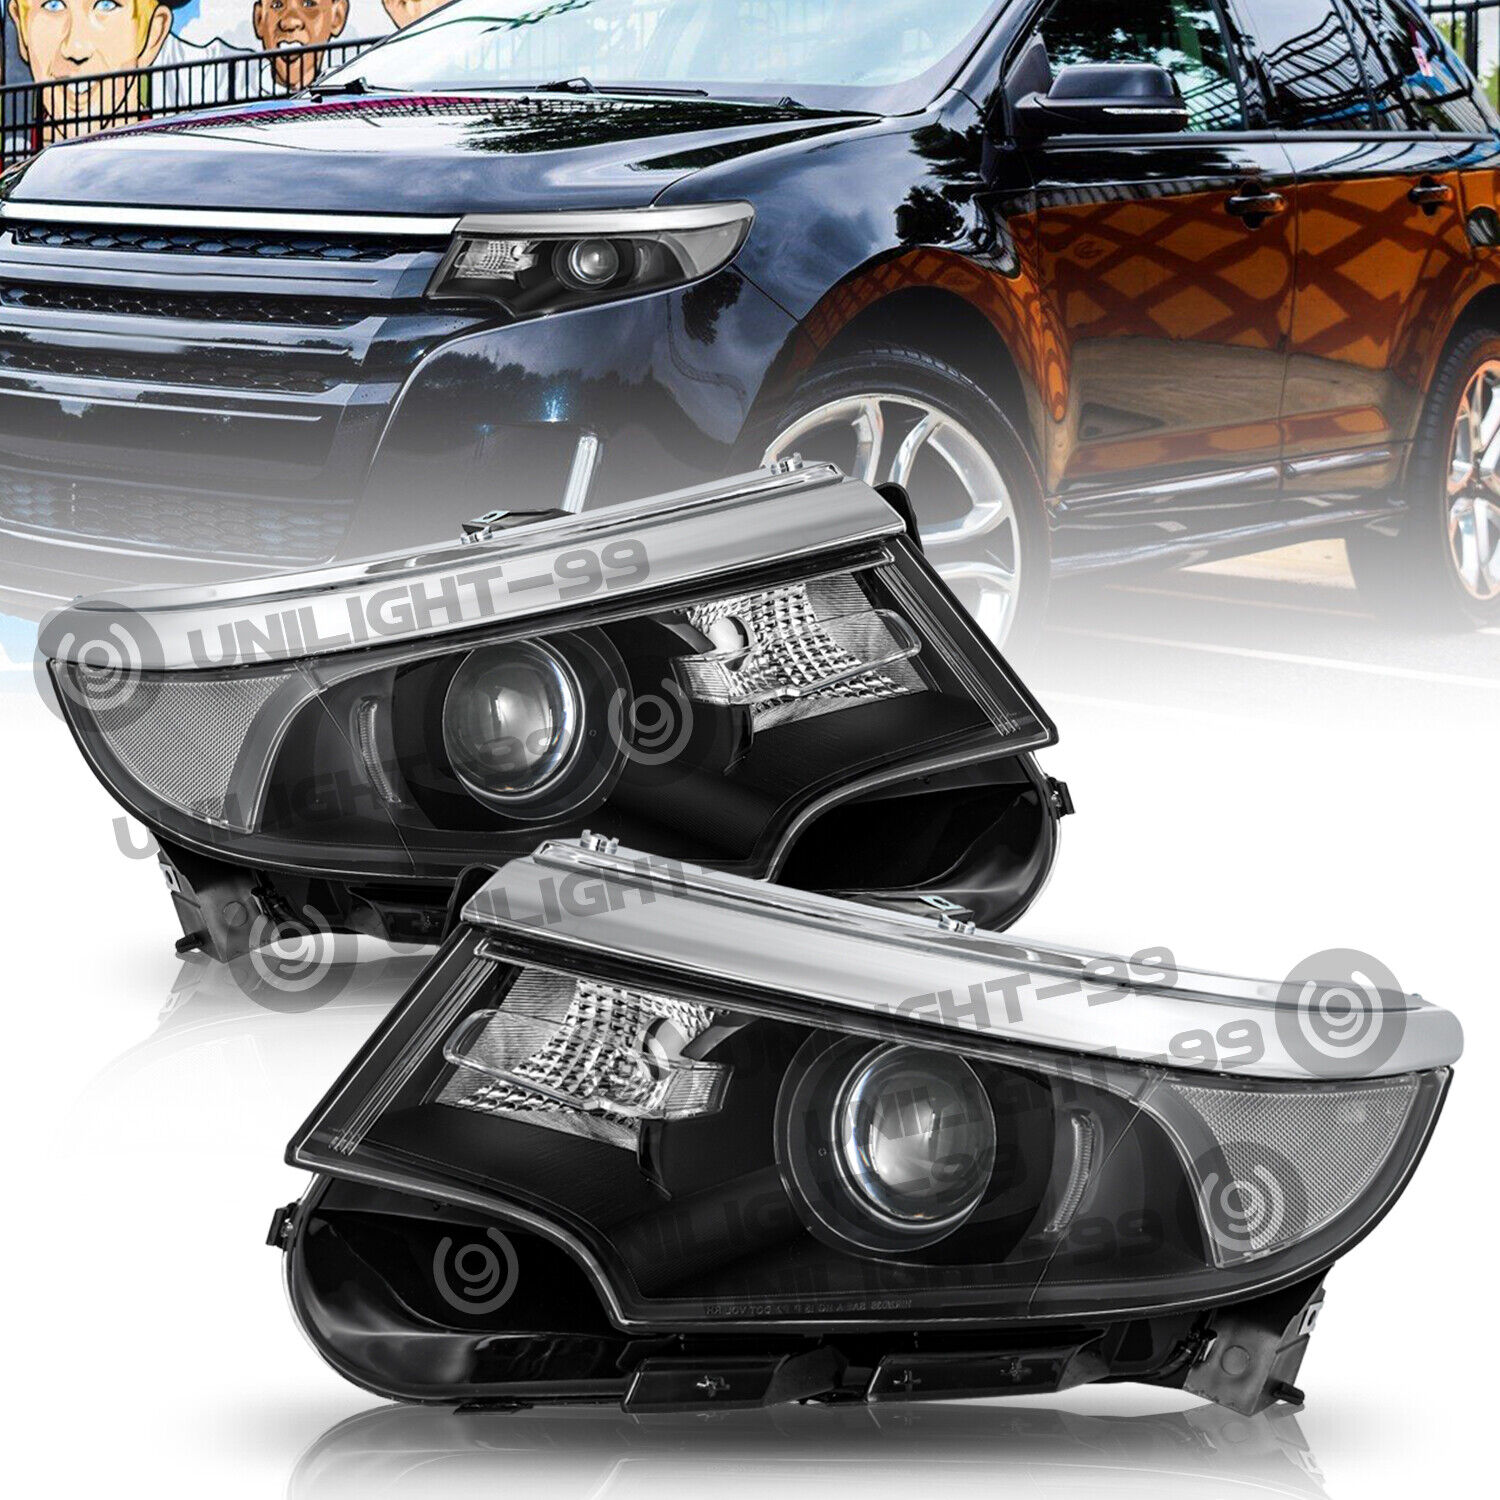 Halogen Model For 2011 2012 2013 2014 Ford Edge Black Headlight Headlamp Pair